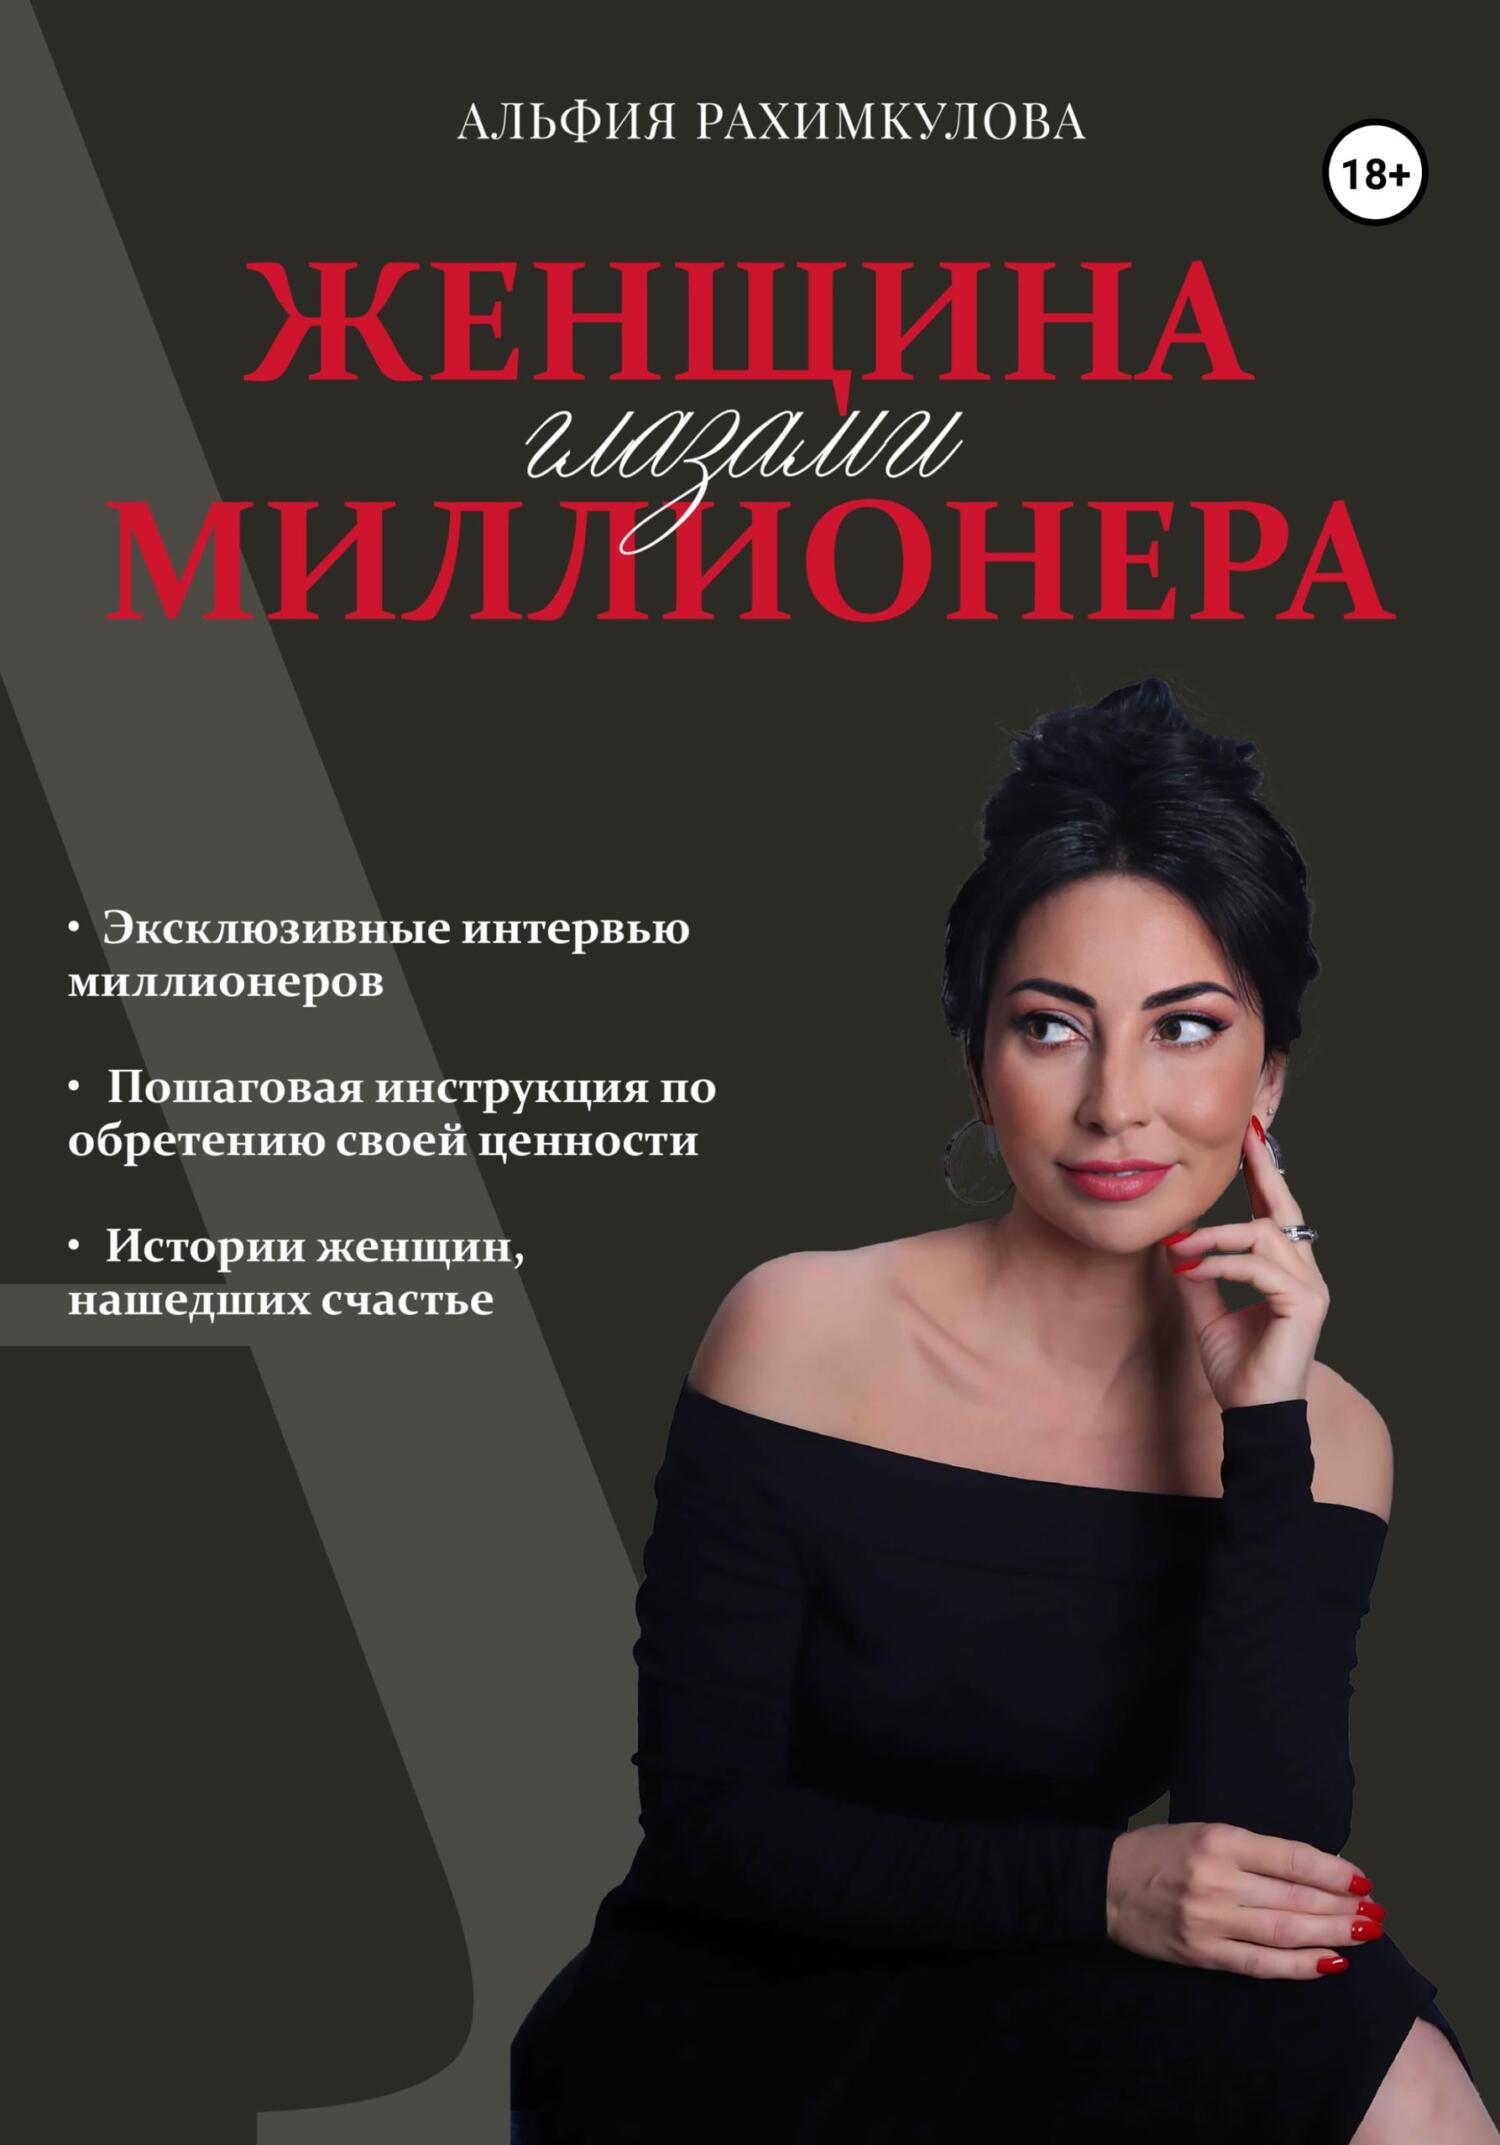 Навка опубликовала фото с автоматом, подписав его словами «русская женщина должна уметь все»